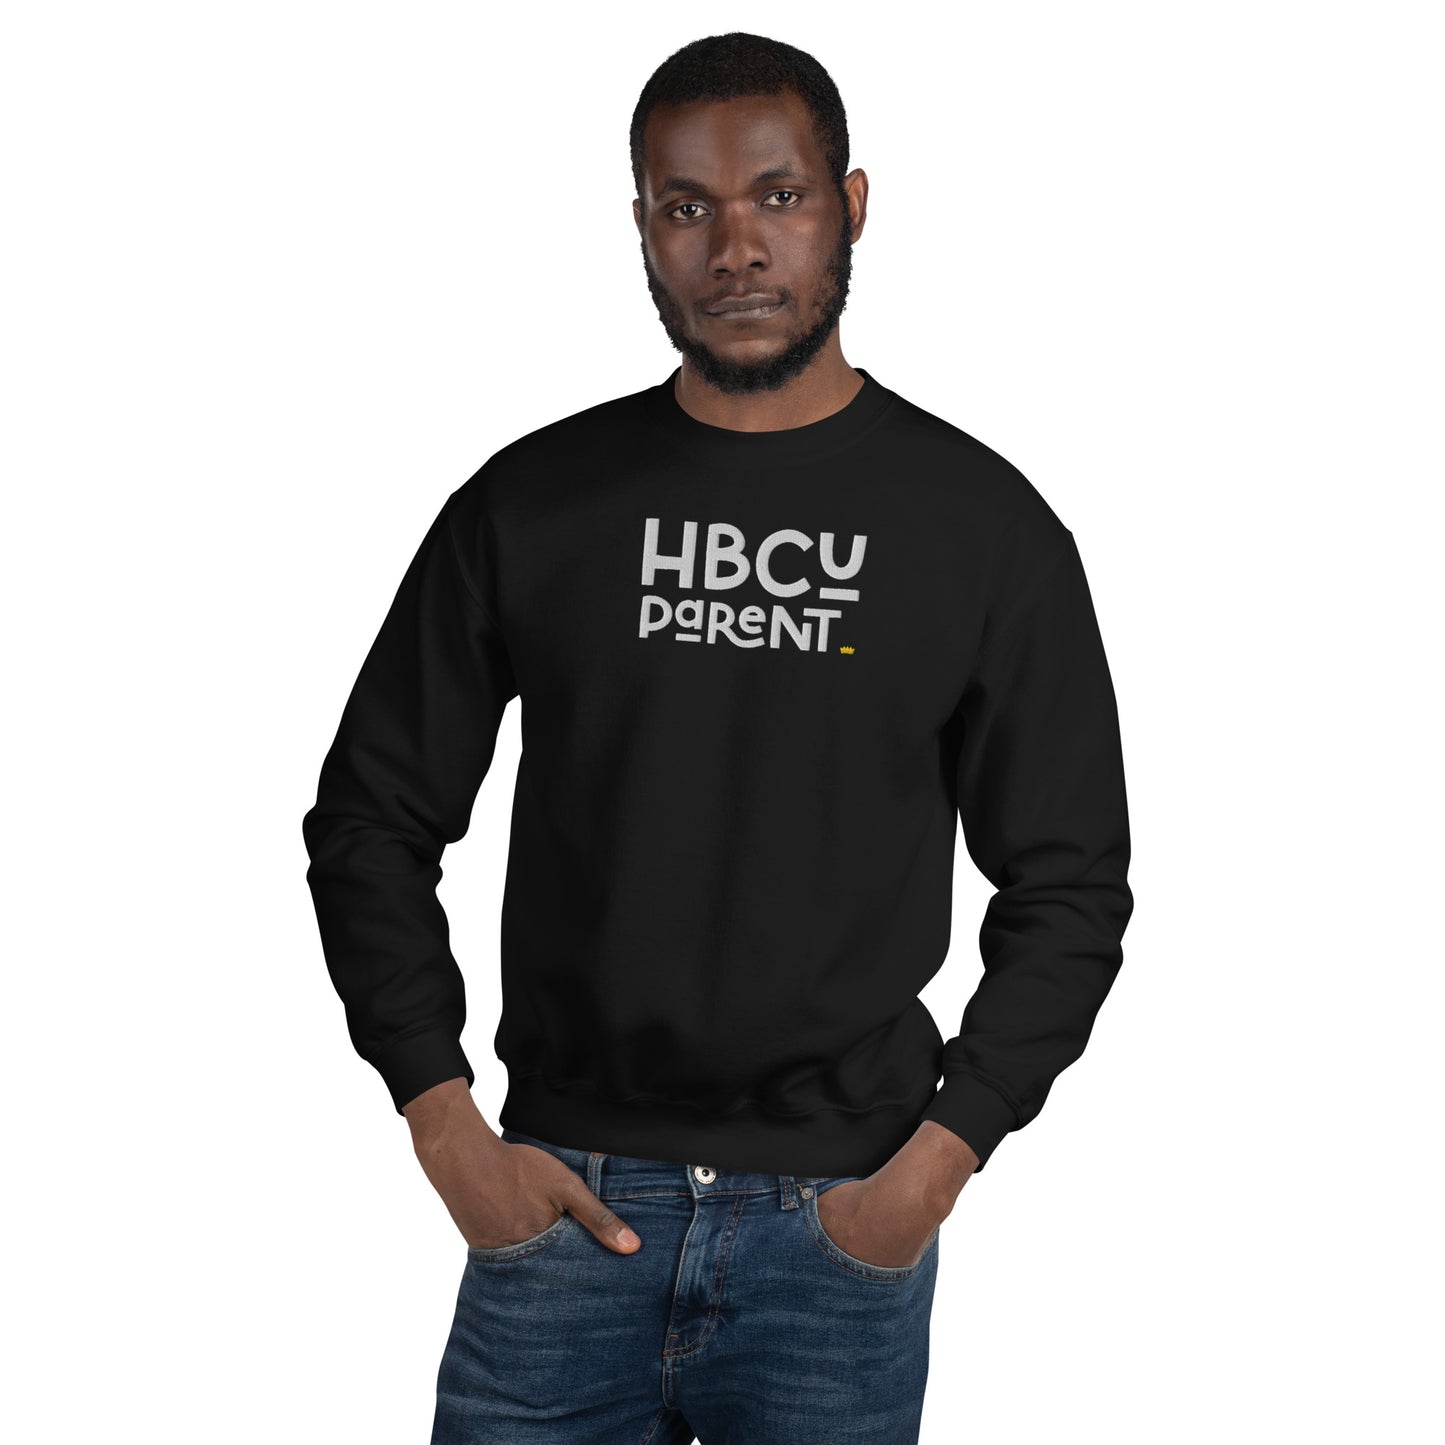 Parent - HBCU Embroidered Unisex Sweatshirt